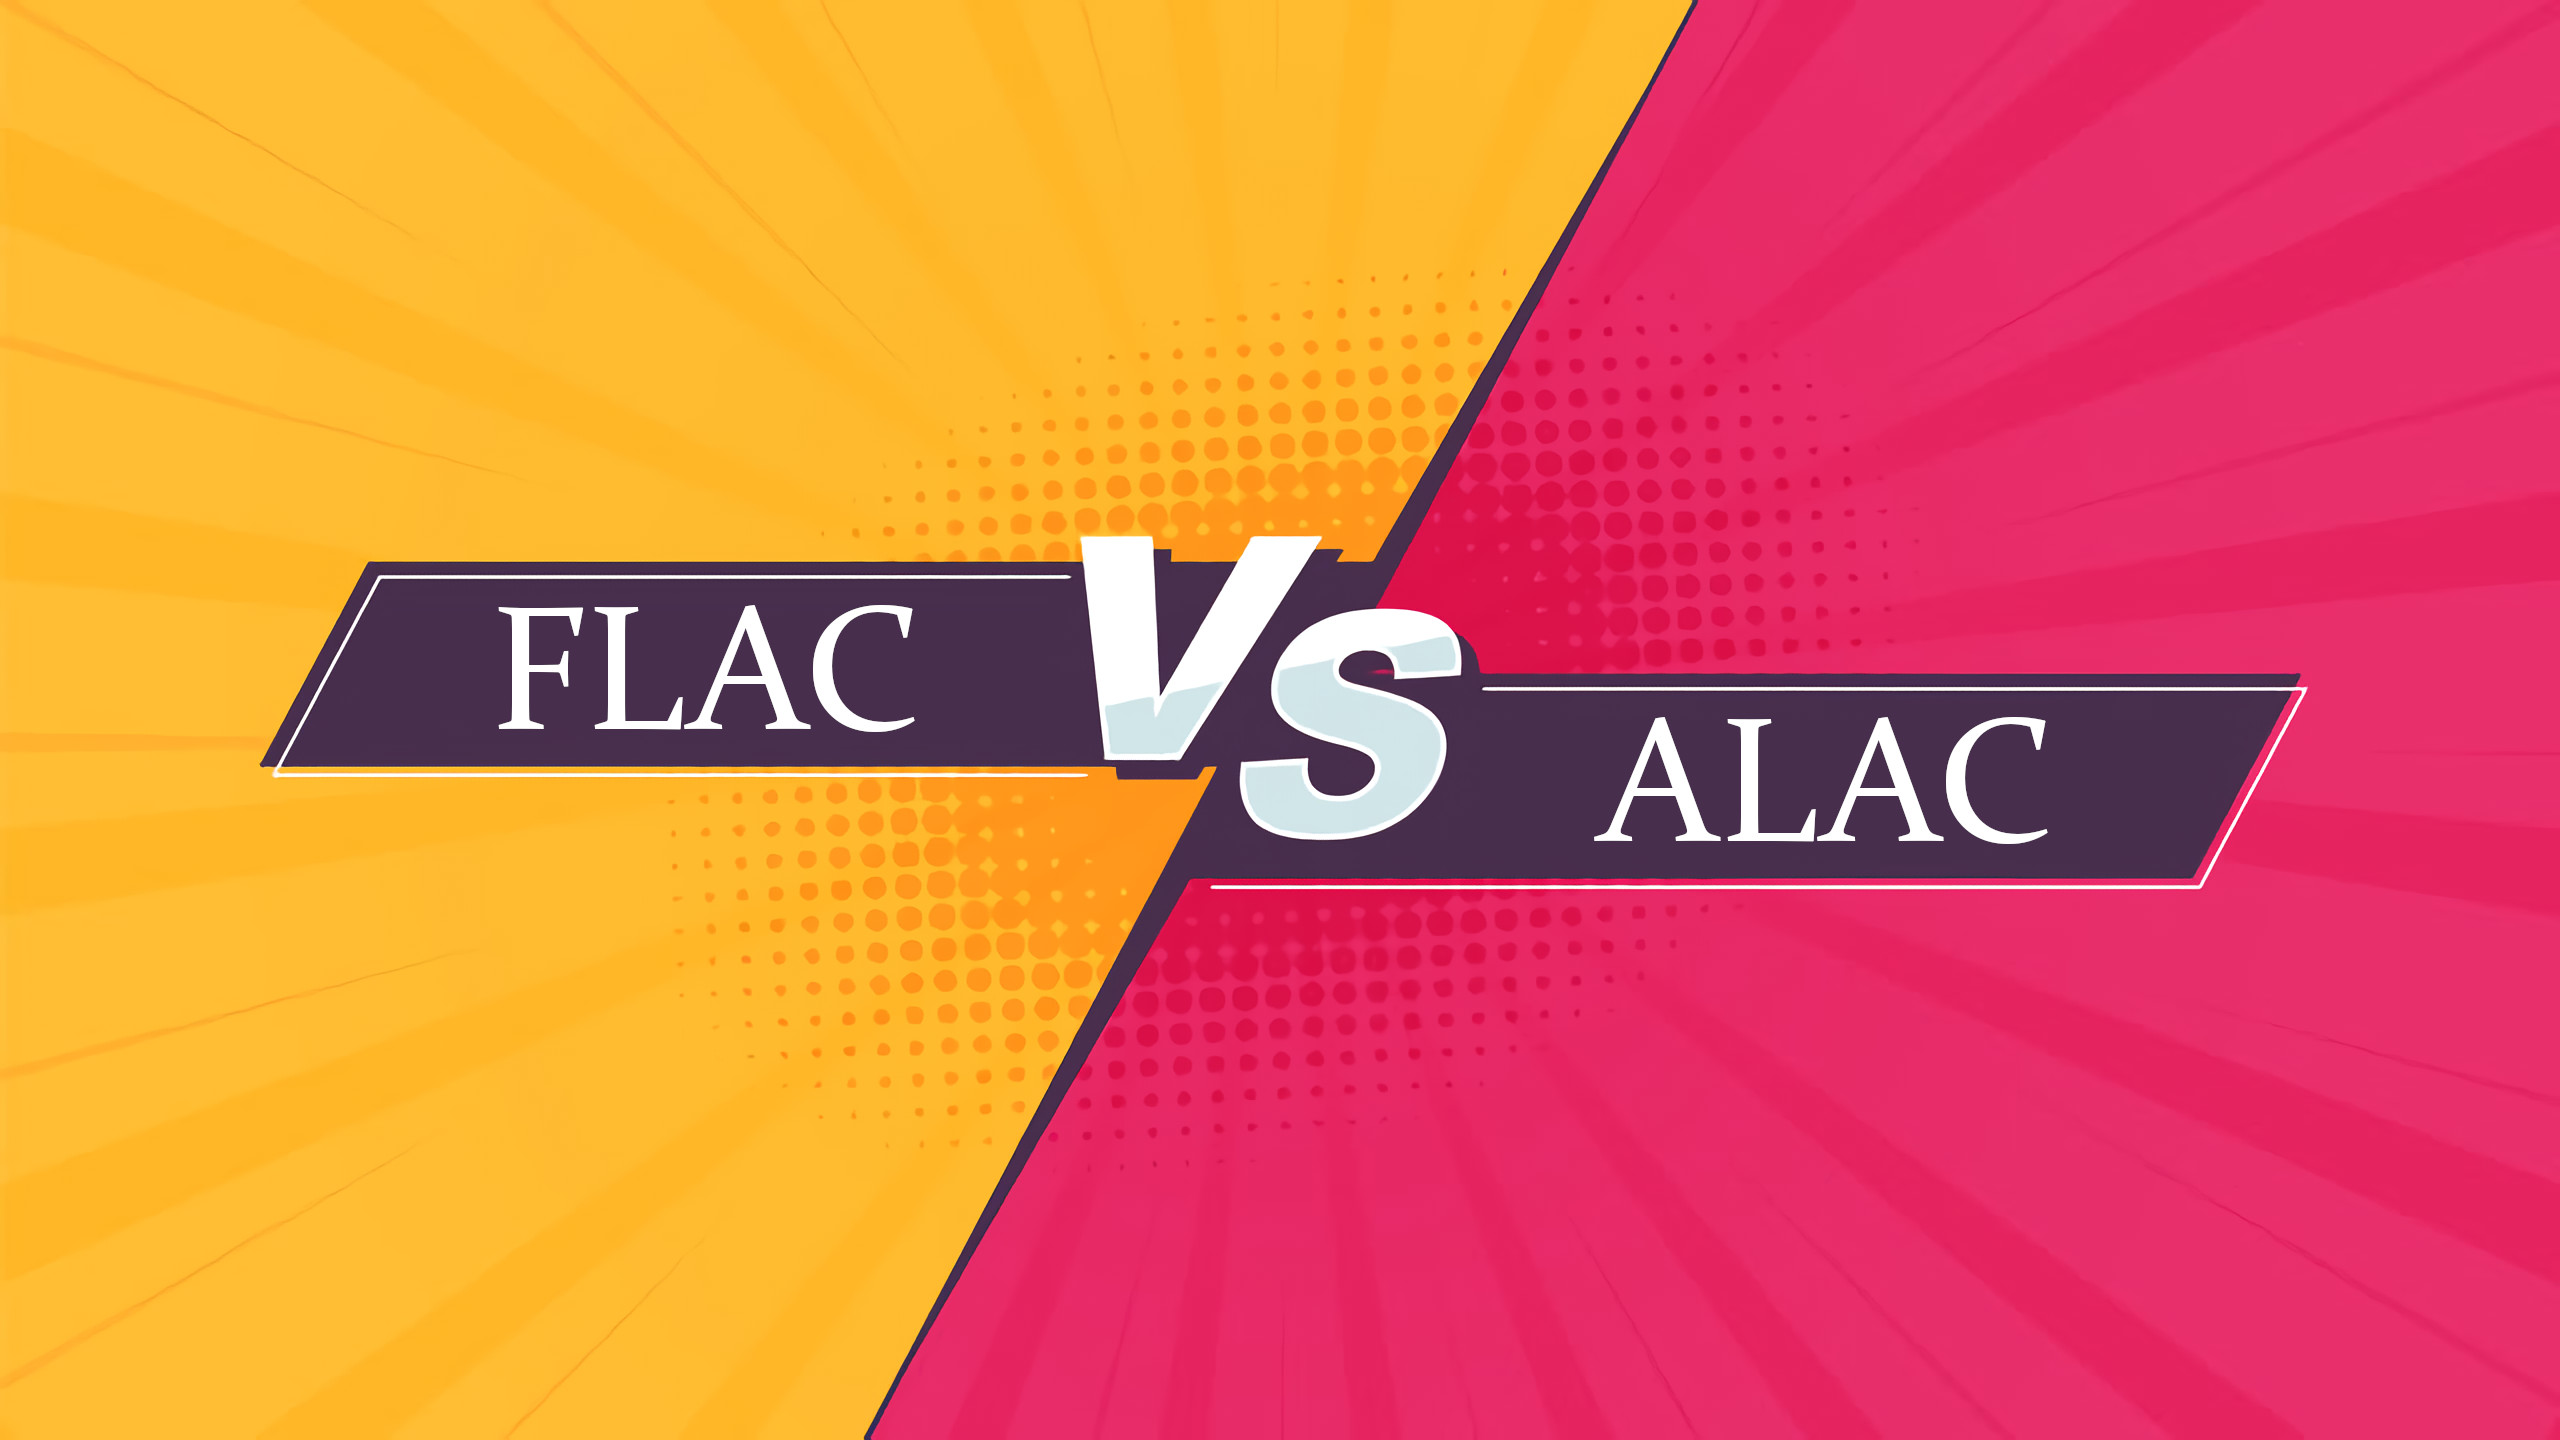 różnica między flac i alac, flac vs alac, porównanie flac i alac